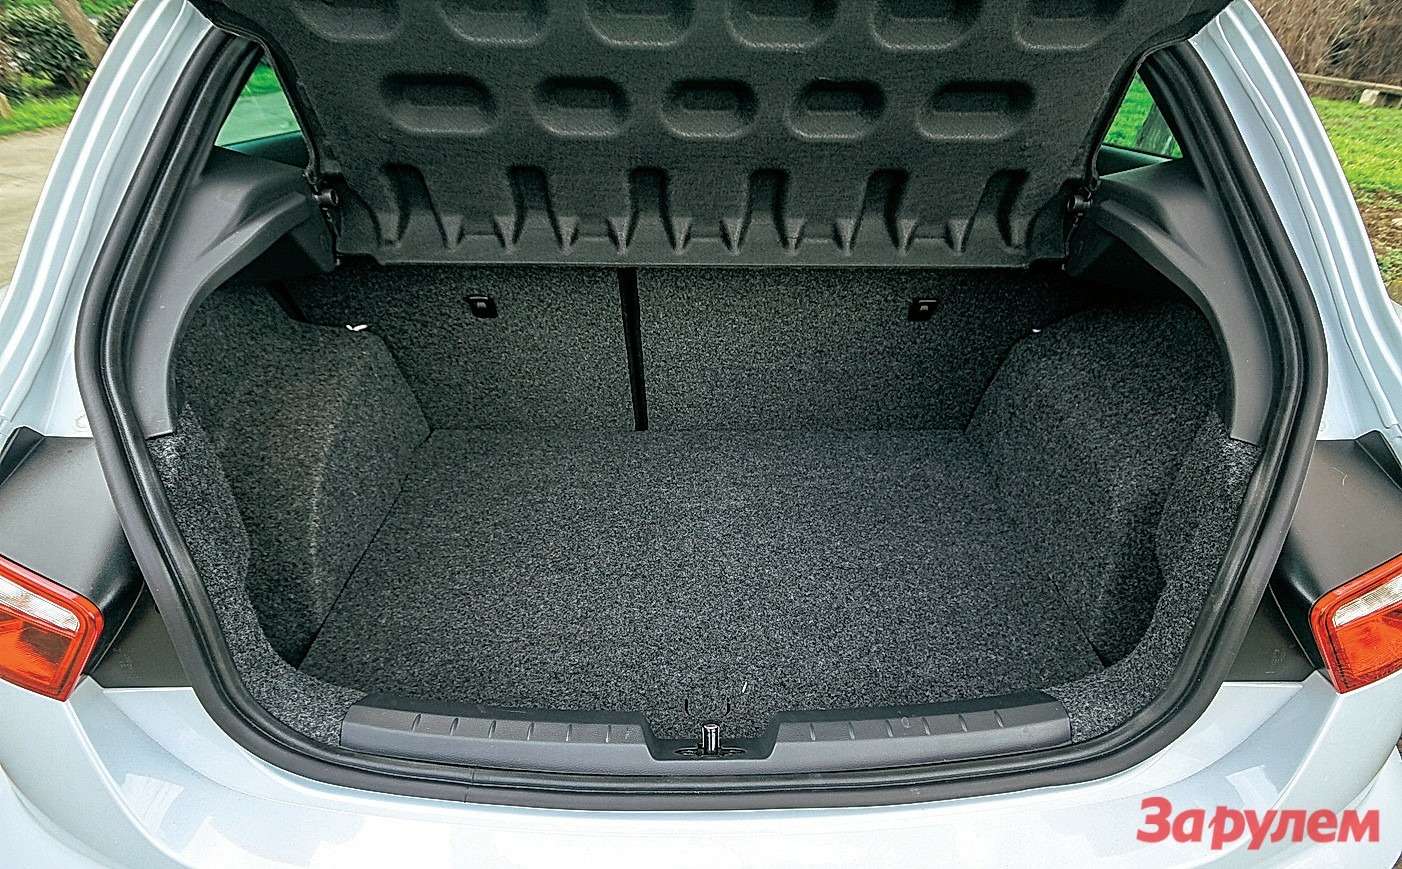 Багажник запросто вместит несколько спортивных сумок, при этом двум пассажирам среднего роста не тесно в заднем ряду. 